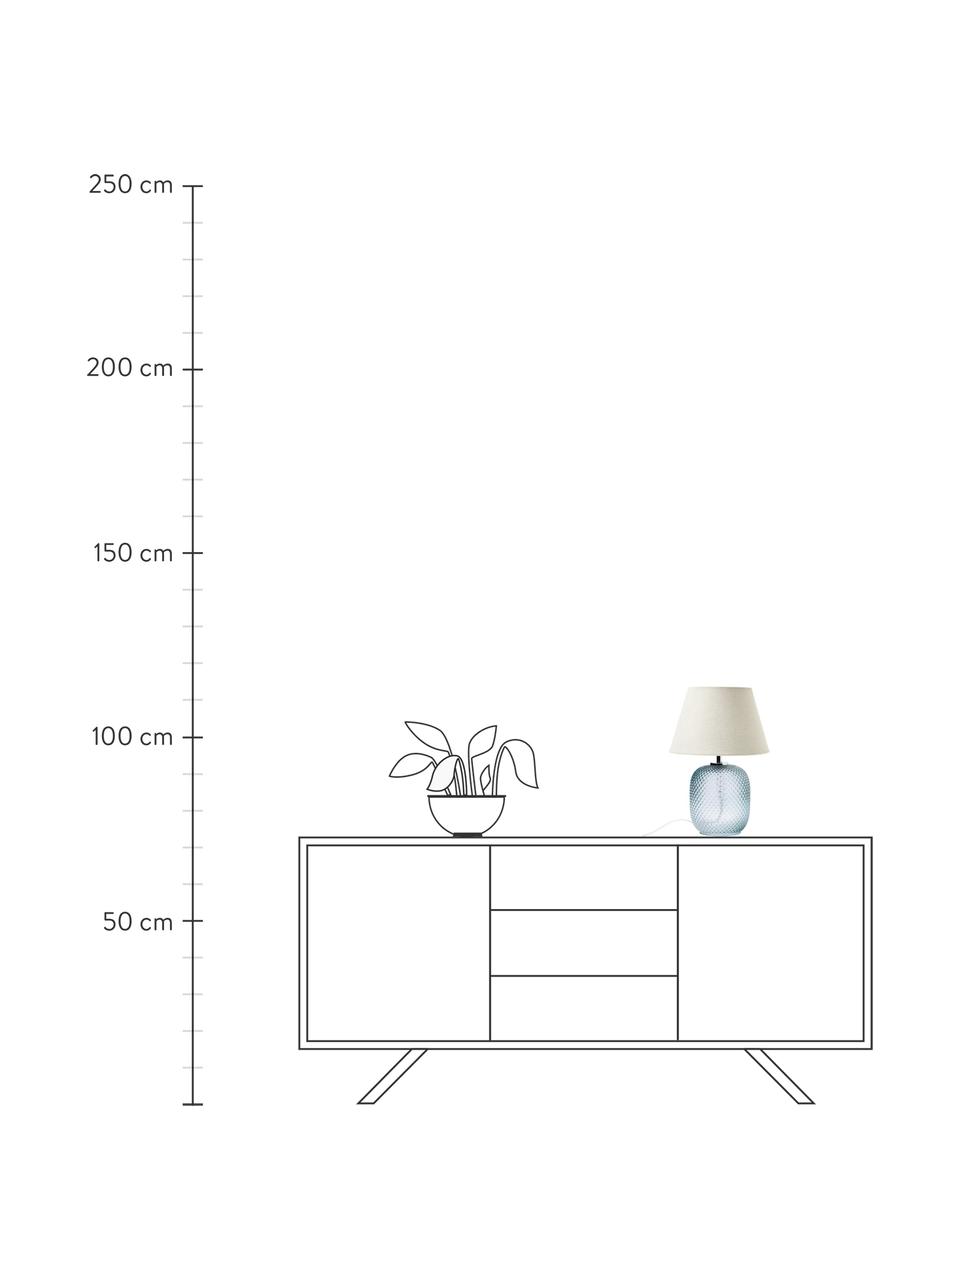 Lámpara de mesa pequeña de vidrio Cornelia, Pantalla: poliéster, Cable: plástico, Beige, azul, Ø 28 x Al 38 cm